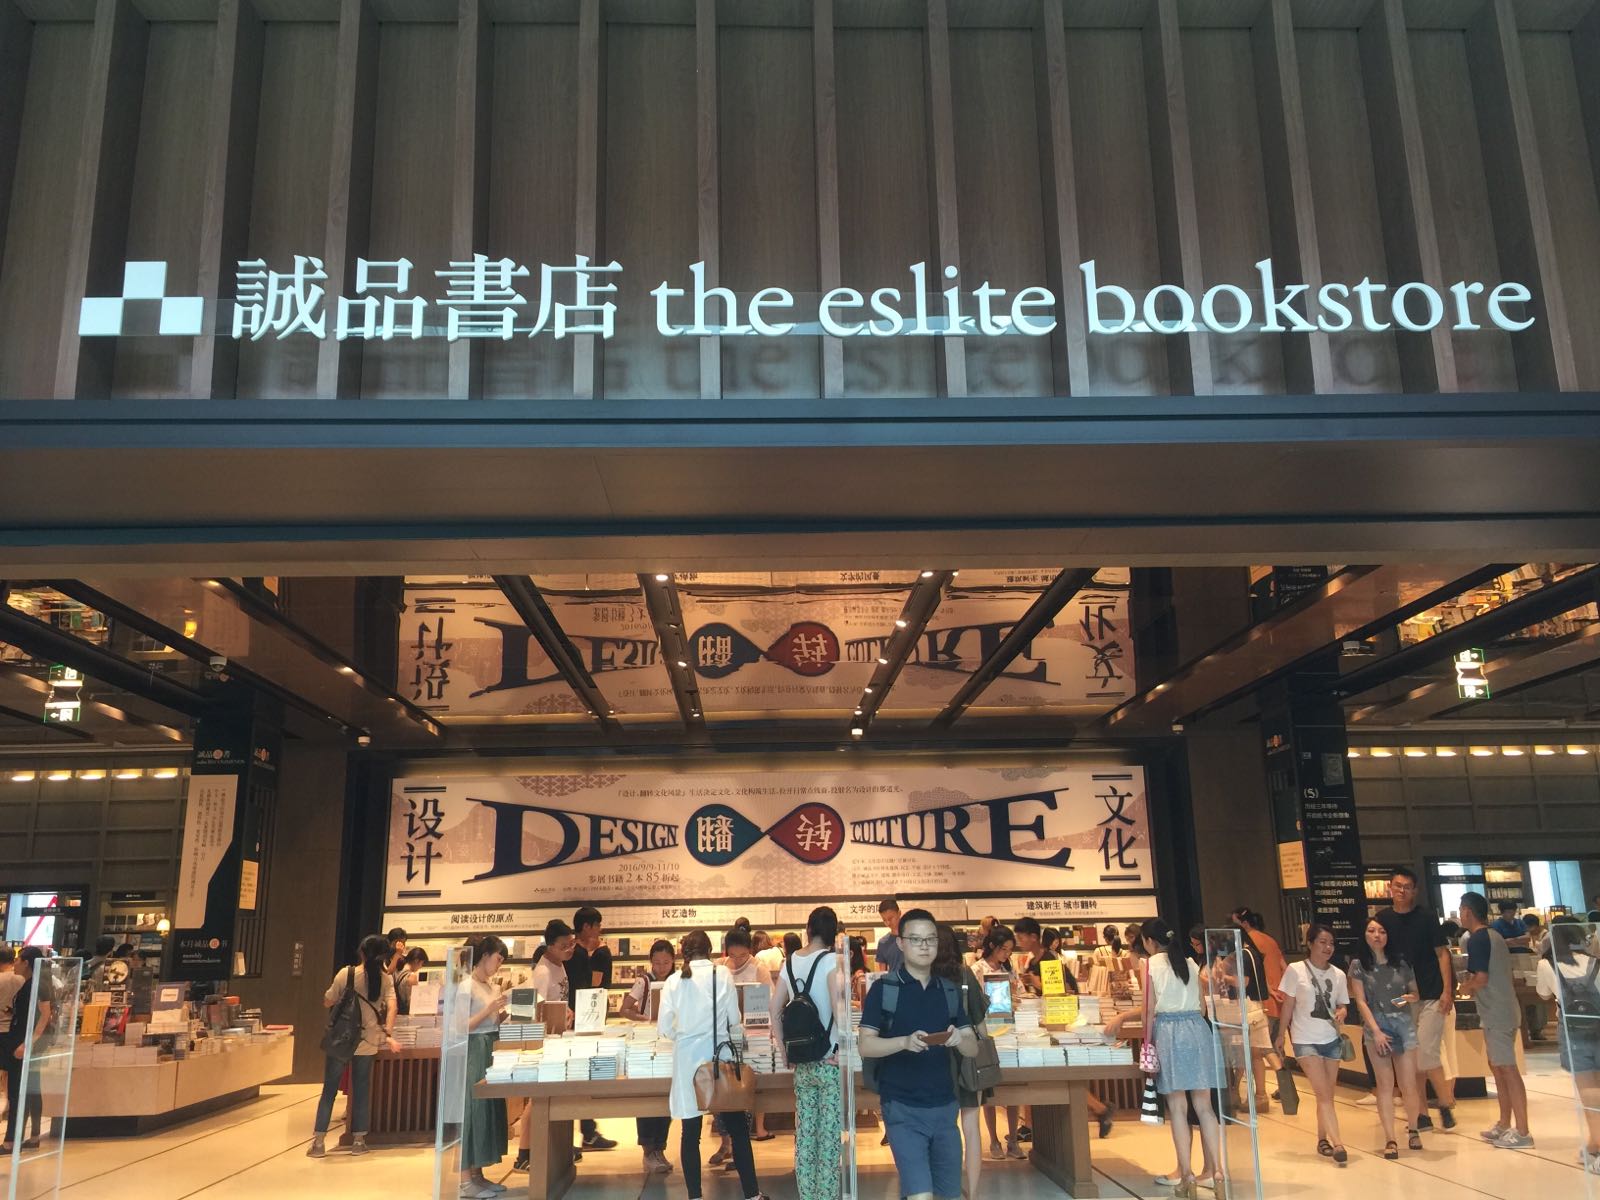 有种置身台湾的错觉，在这里能逛上一整天，有的吃有的逛，主要有很多书可以